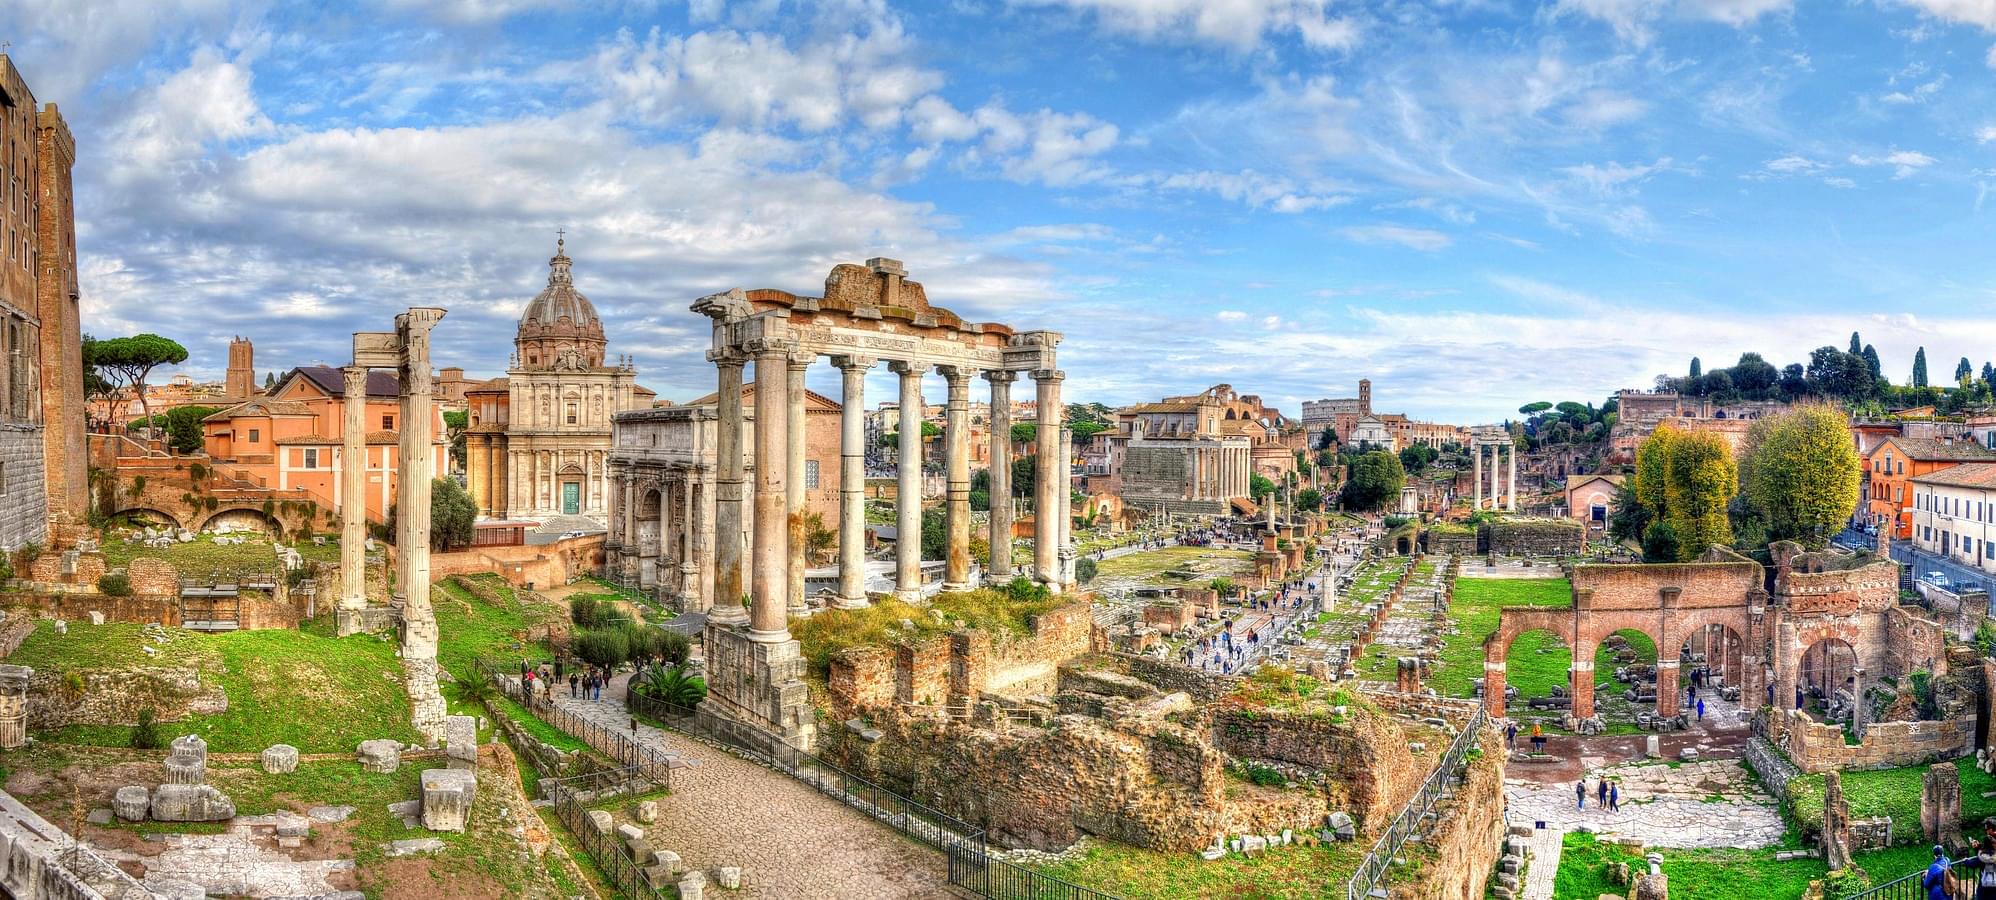 Places To Visit Near Colosseum | Roman Forum